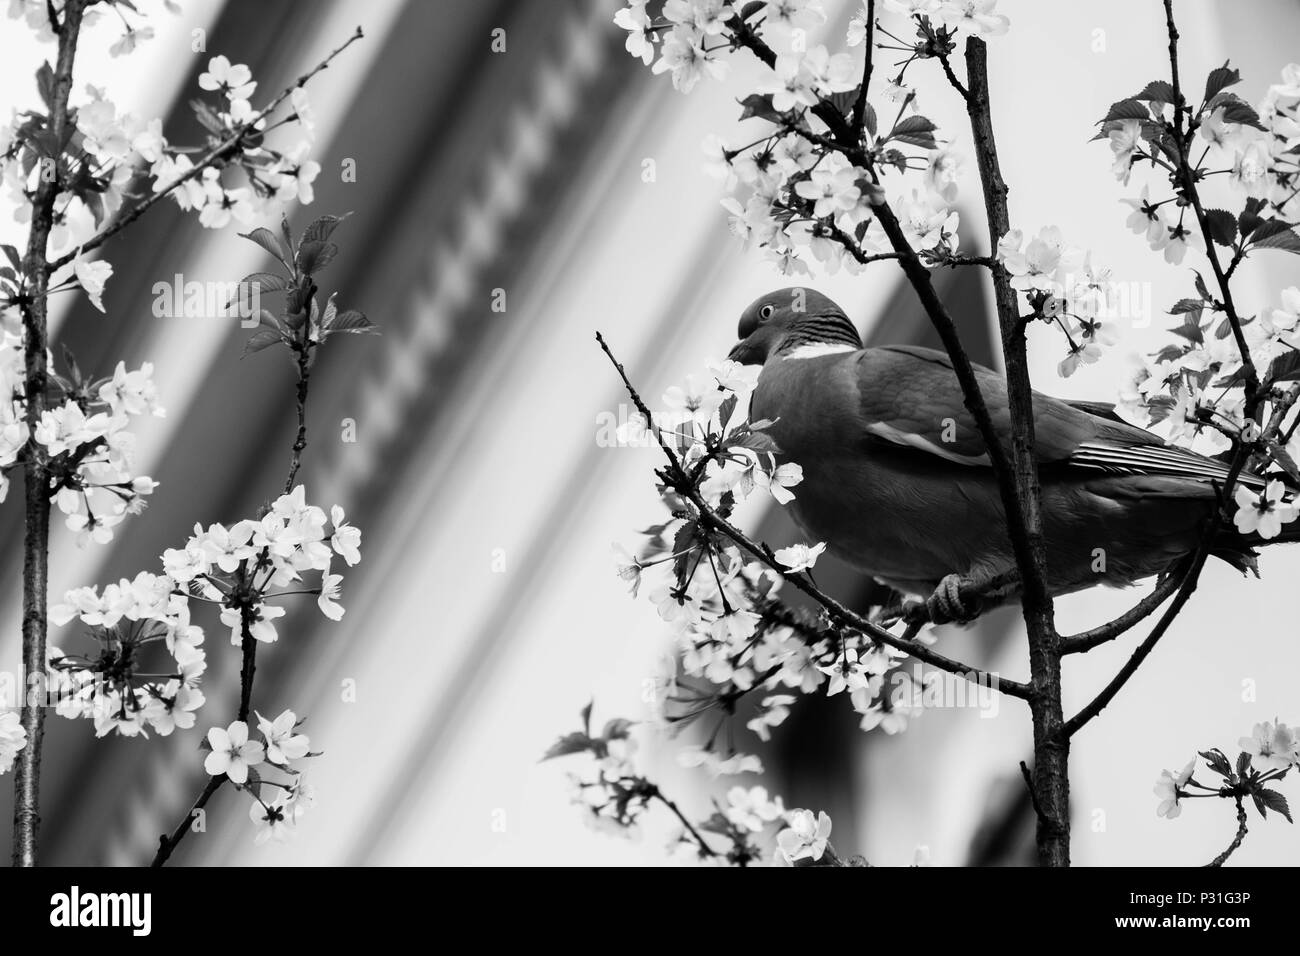 Dans cette photo en noir et blanc, un pigeon se trouve dans un arbre en fleurs à Anvers. Comme dans de nombreuses villes, les pigeons sont souvent vus à Anvers. Banque D'Images